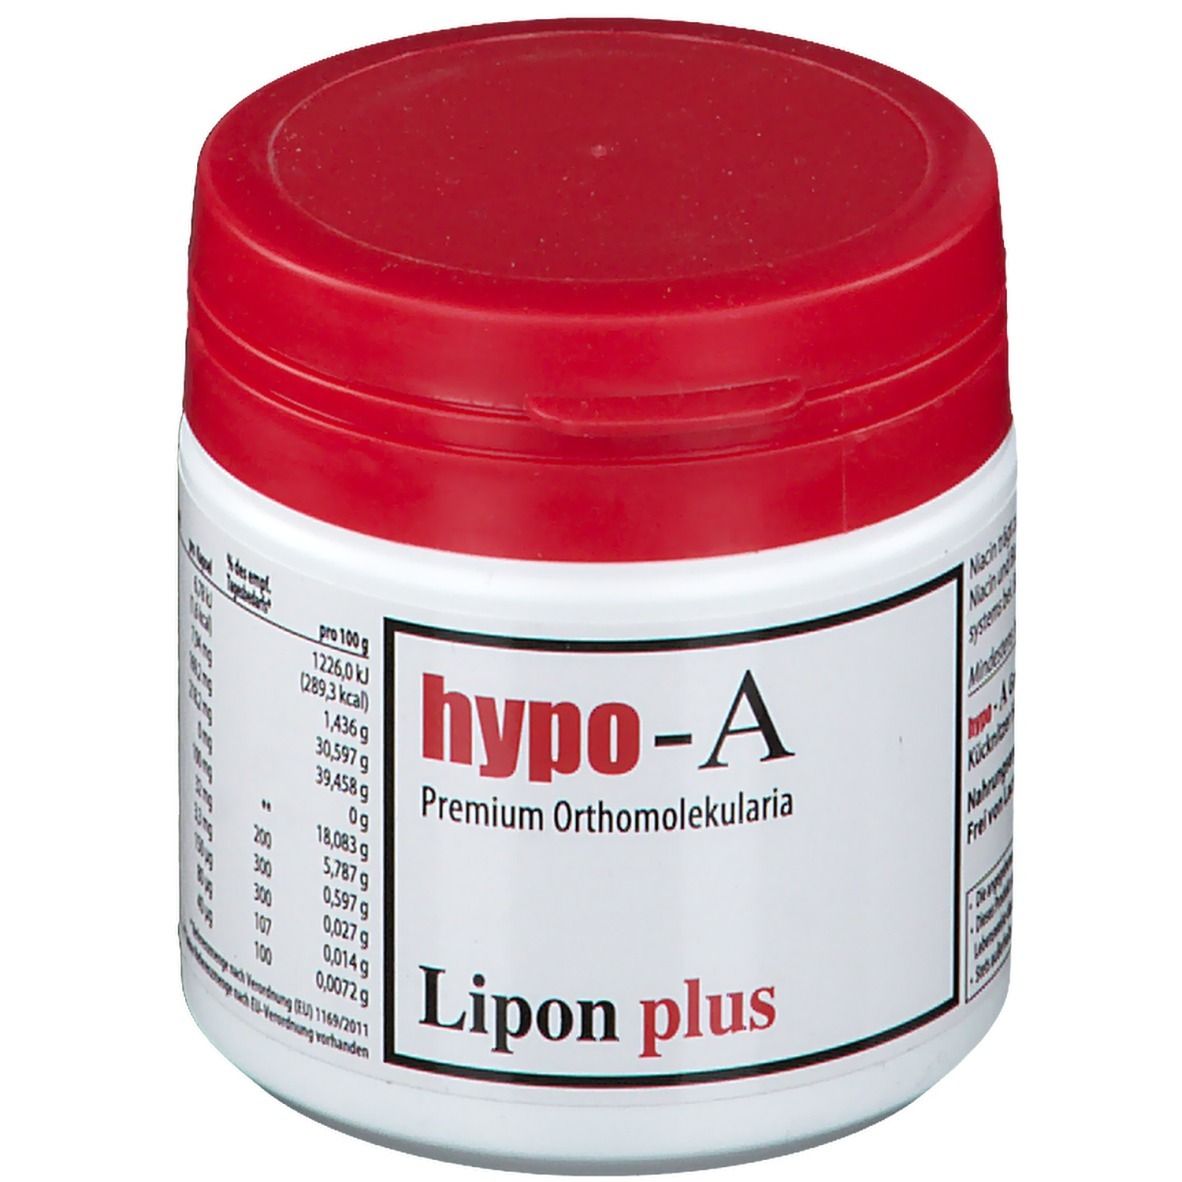 hypo-A Lipon Plus